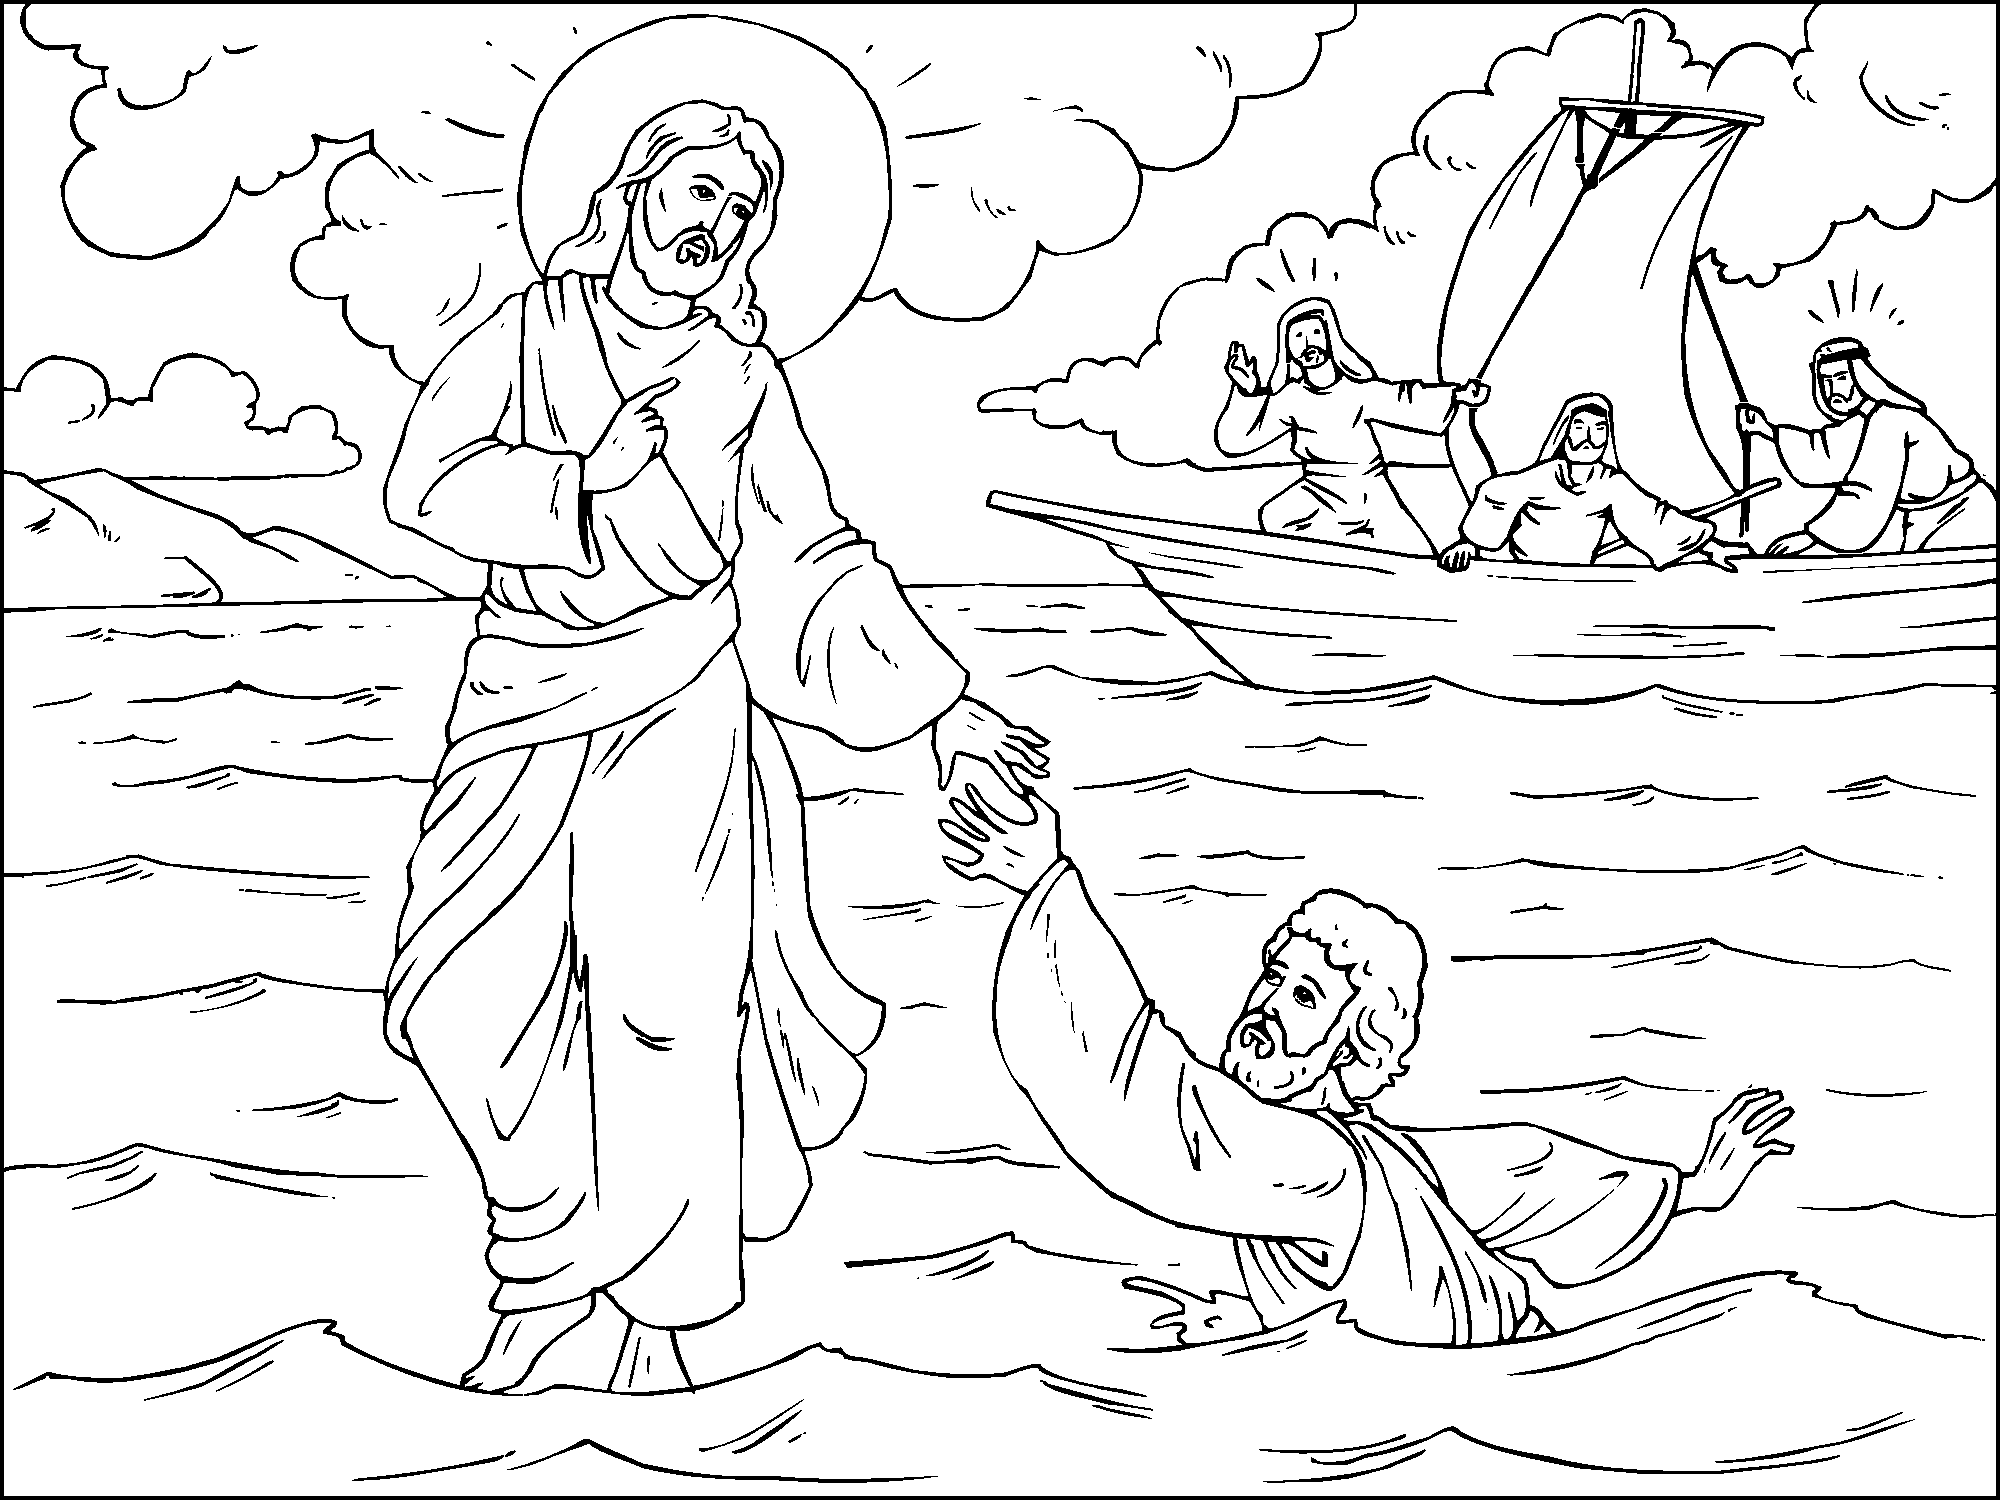 Библейский сюжет рисунок. Хождение Иисуса Христа по водам. Чудеса Иисуса Христа хождение Иисуса по водам. Рисунок на библейскую тему. Иллюстрации к библейским сюжетам.